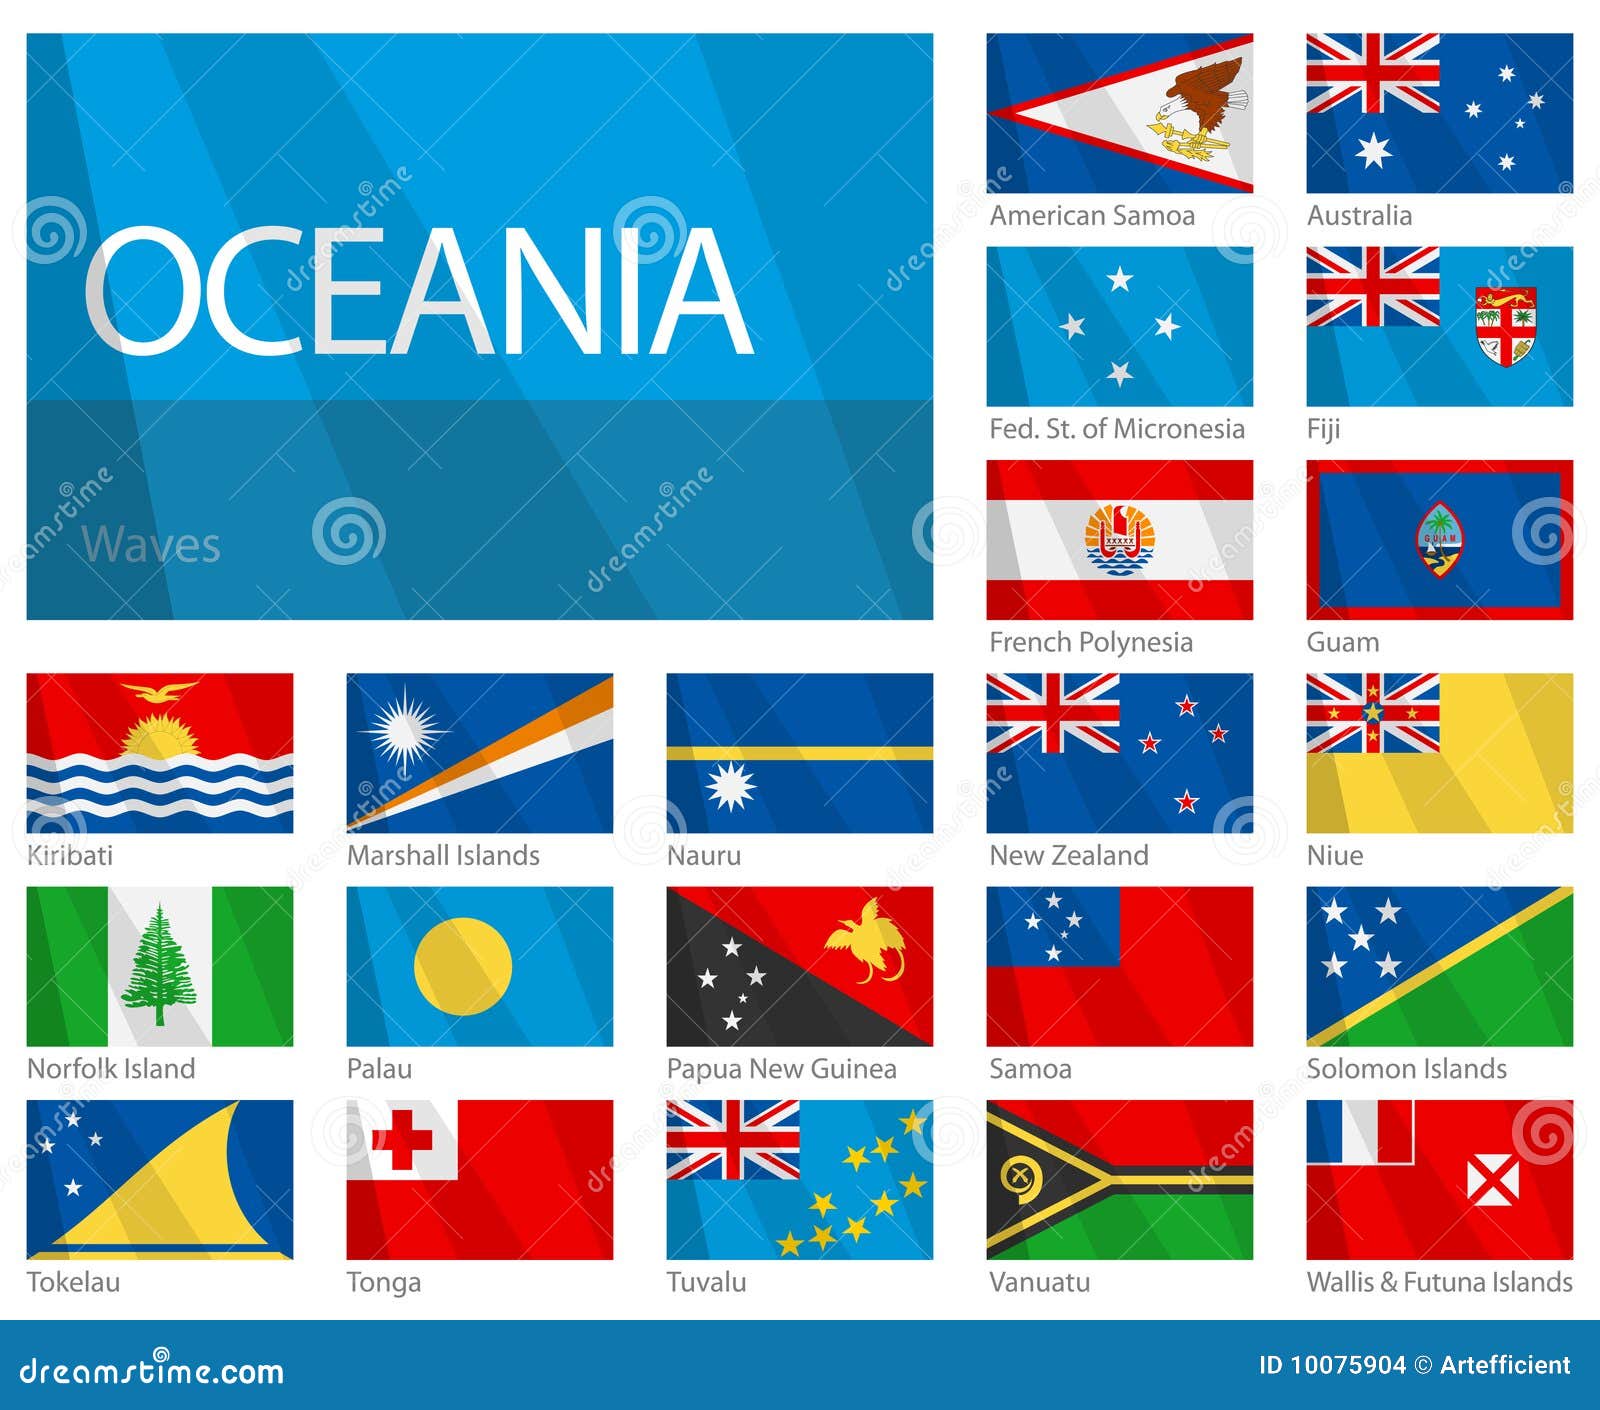 Флаги стран окружающий 2. Страны и флаги задания для детей. Флаги стран с названиями на английском языке. Флаги стран тест. Флаг Океании.